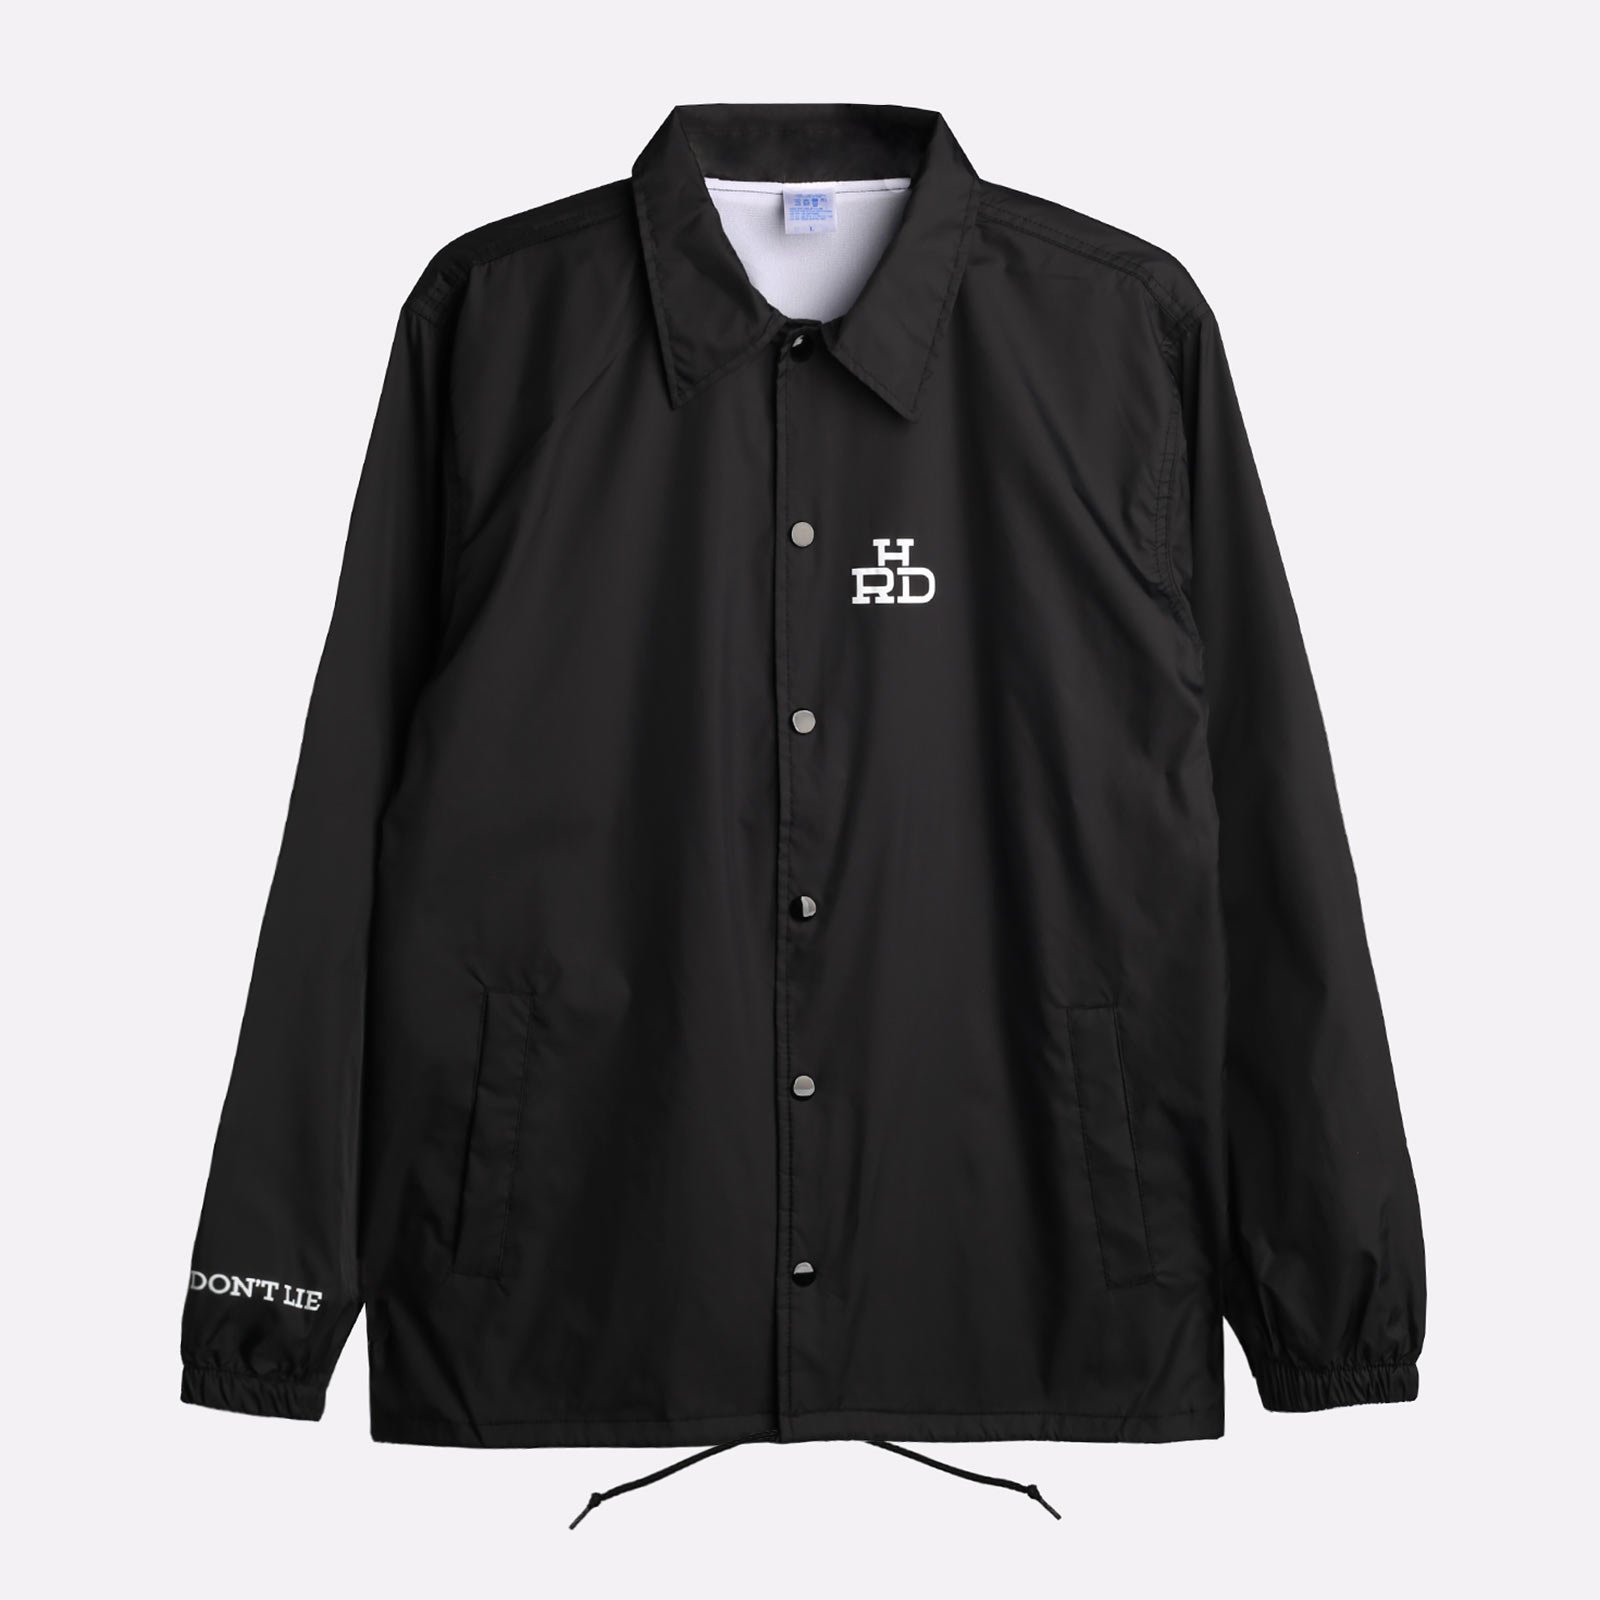 мужская куртка Hard Black Coach  (Plgrnd-black-coach)  - цена, описание, фото 1